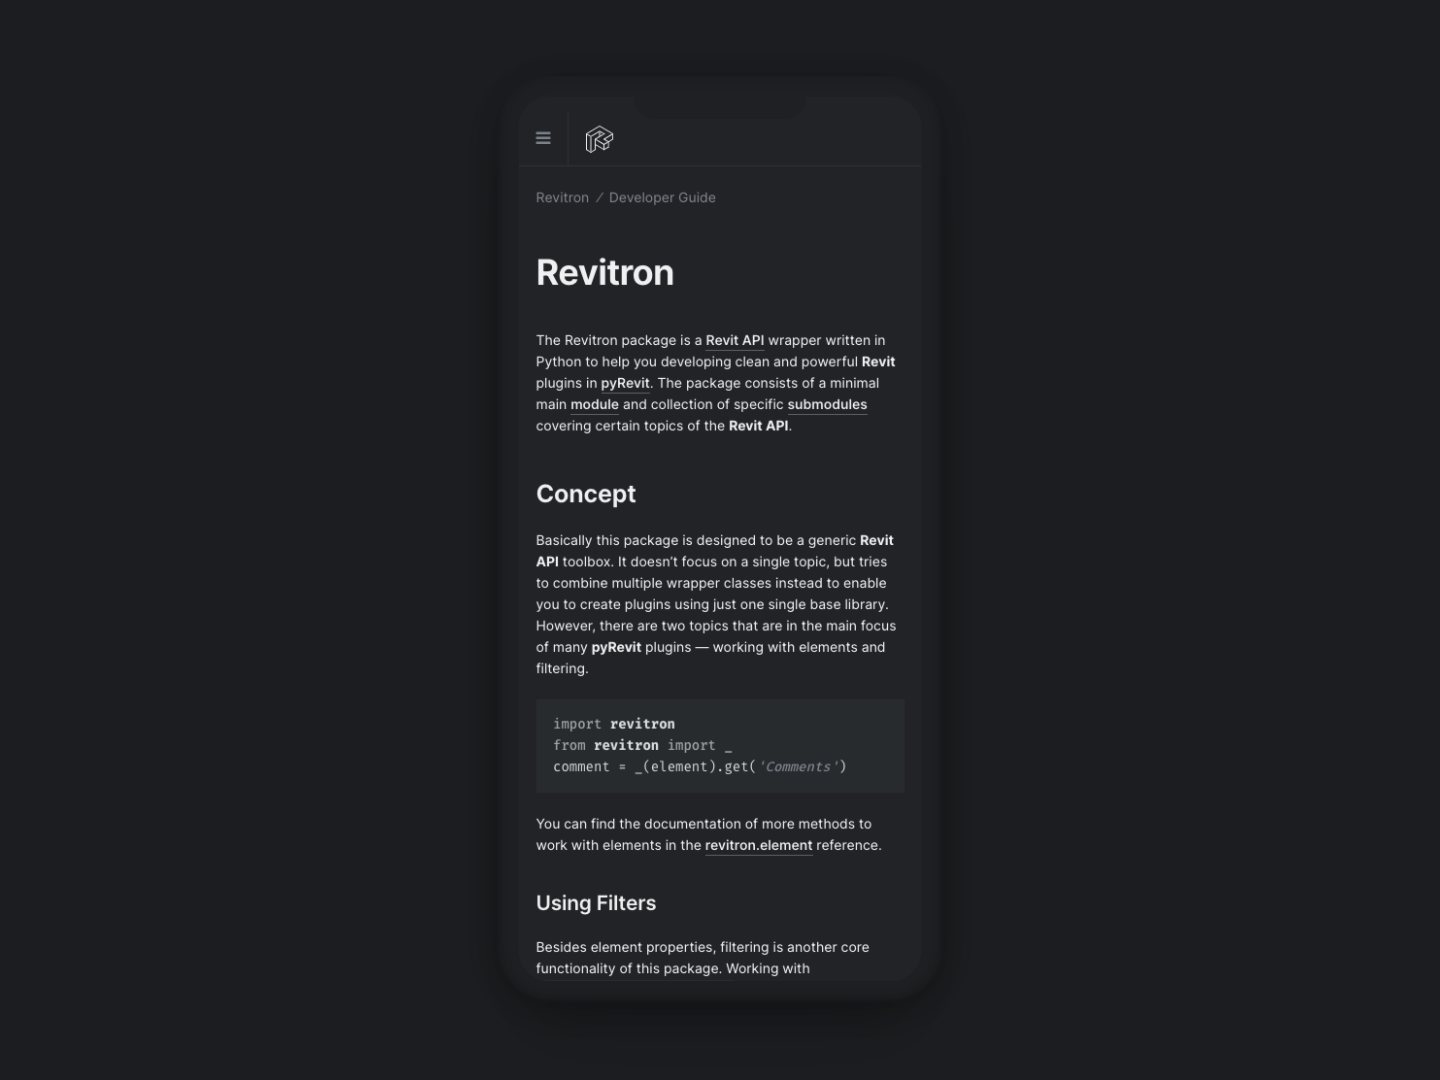 The Revitron Dark Theme on a Mobile